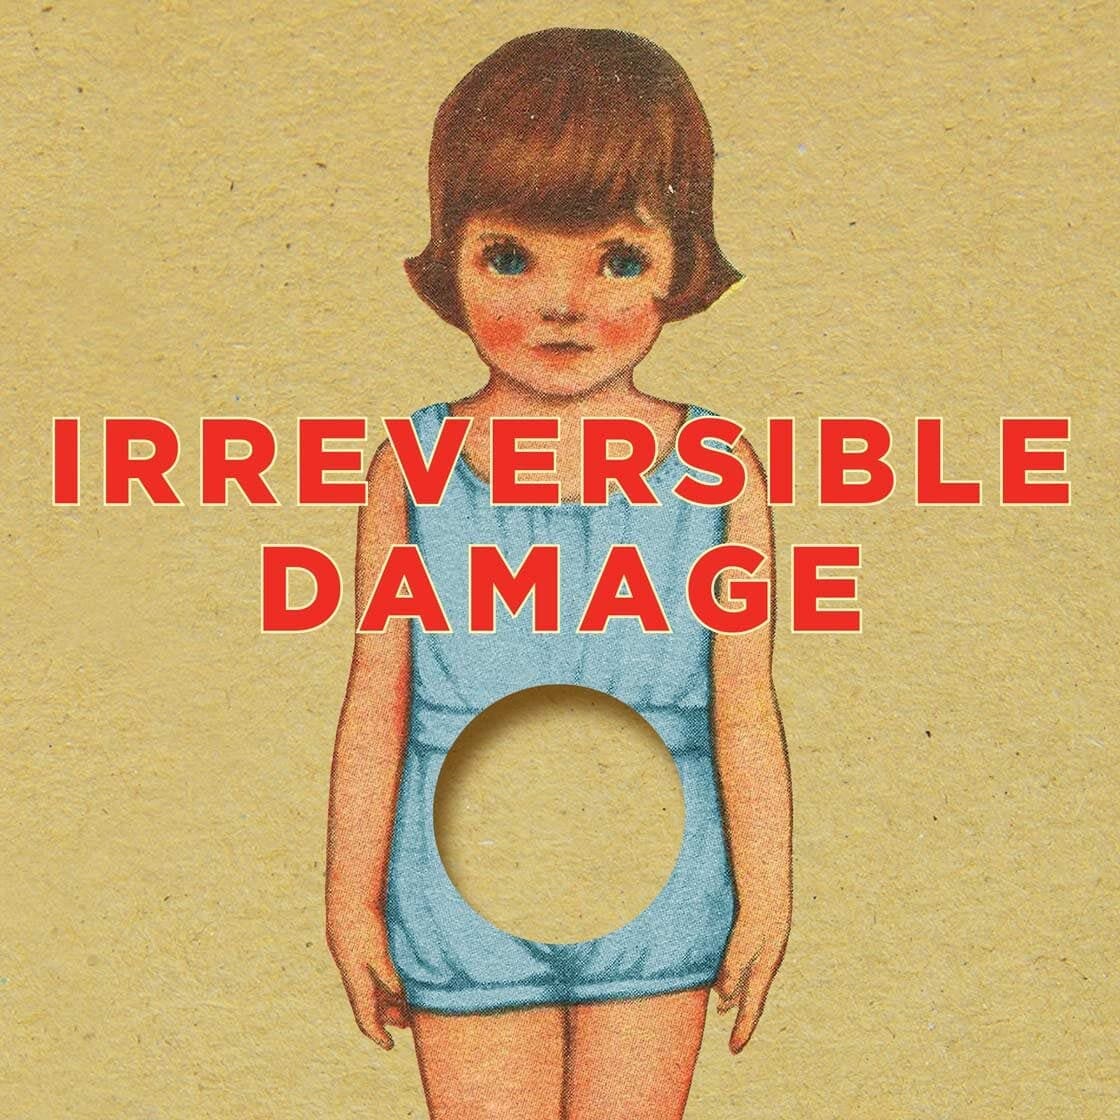 Irreversible-Damage-detail-2x-1120x1120